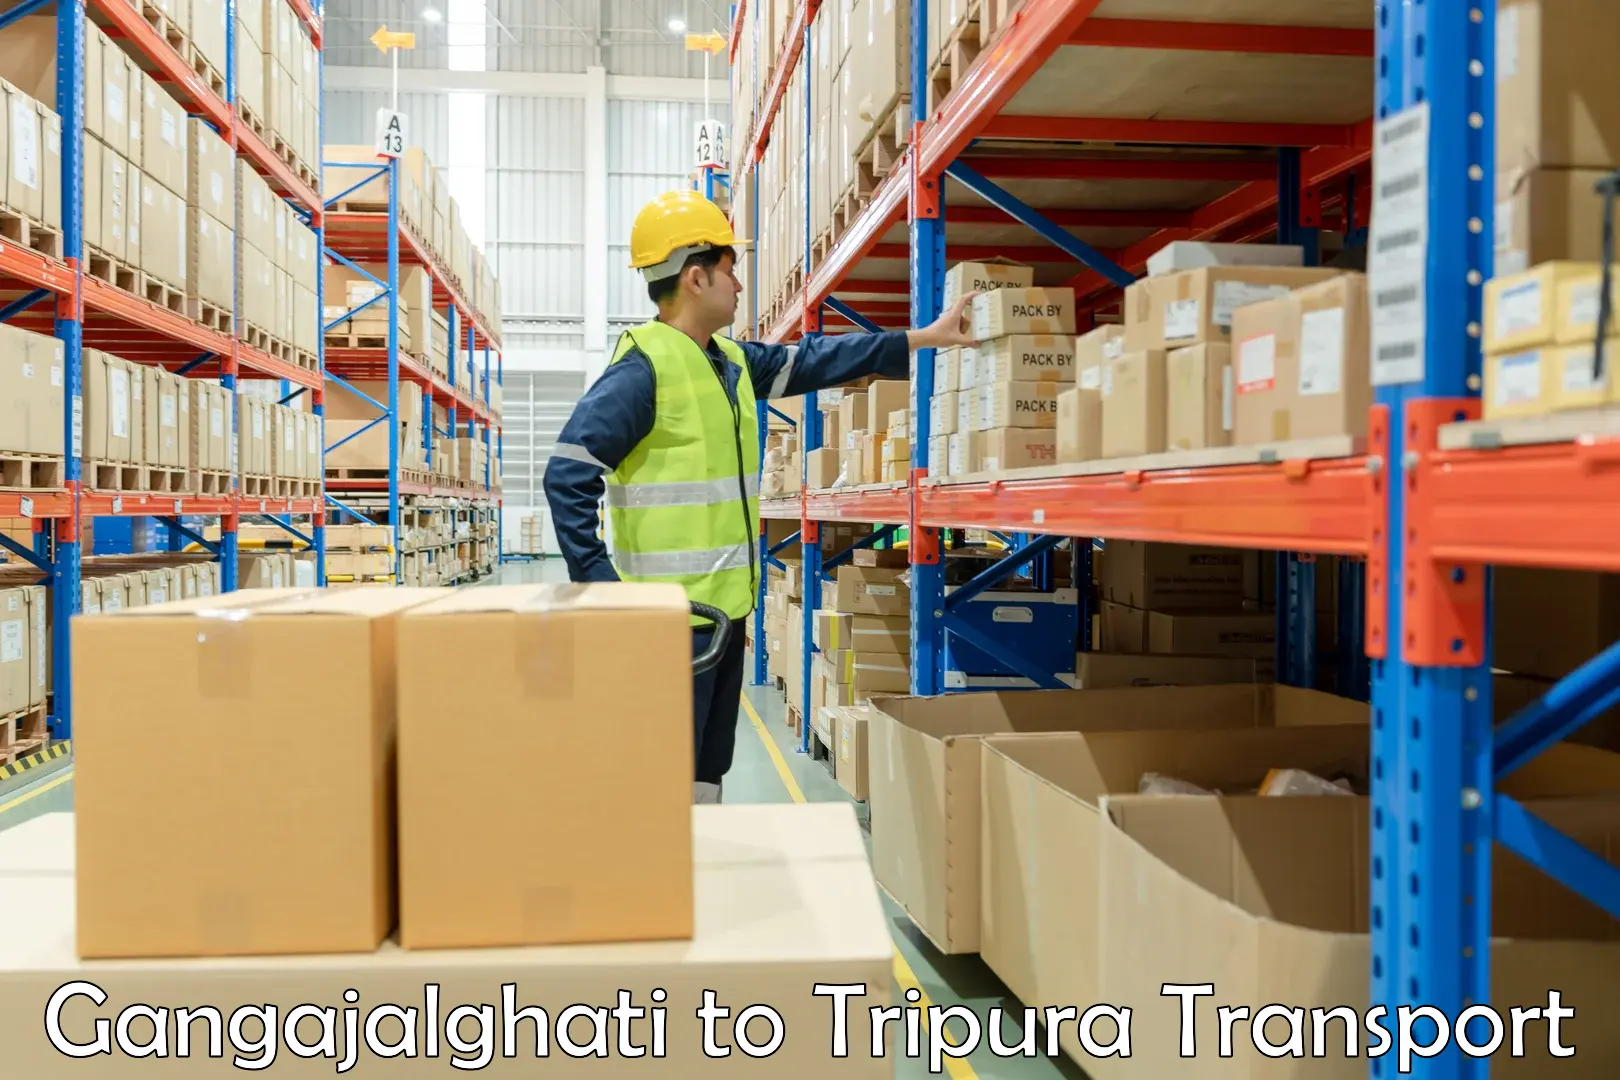 Goods delivery service Gangajalghati to Ambassa